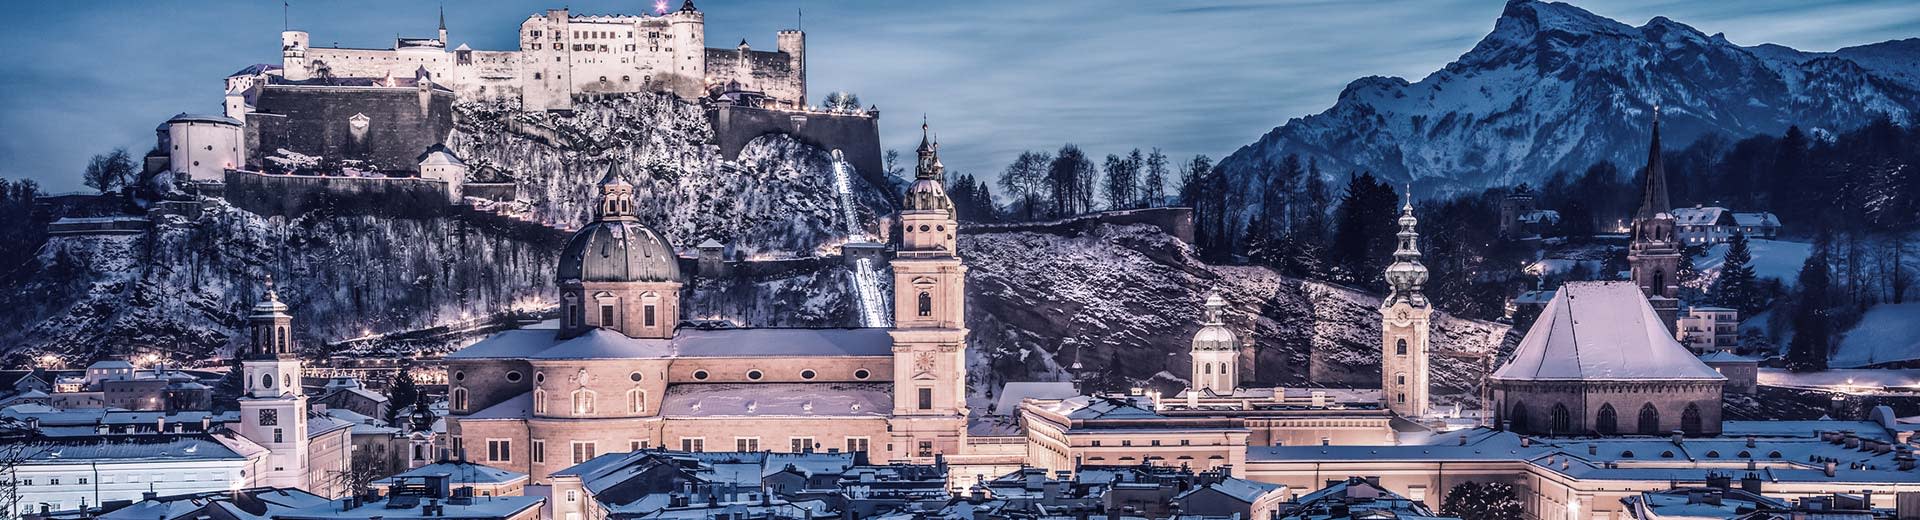 萨尔茨堡城堡点亮了夜空的背景，而历史建筑则清晰可见。